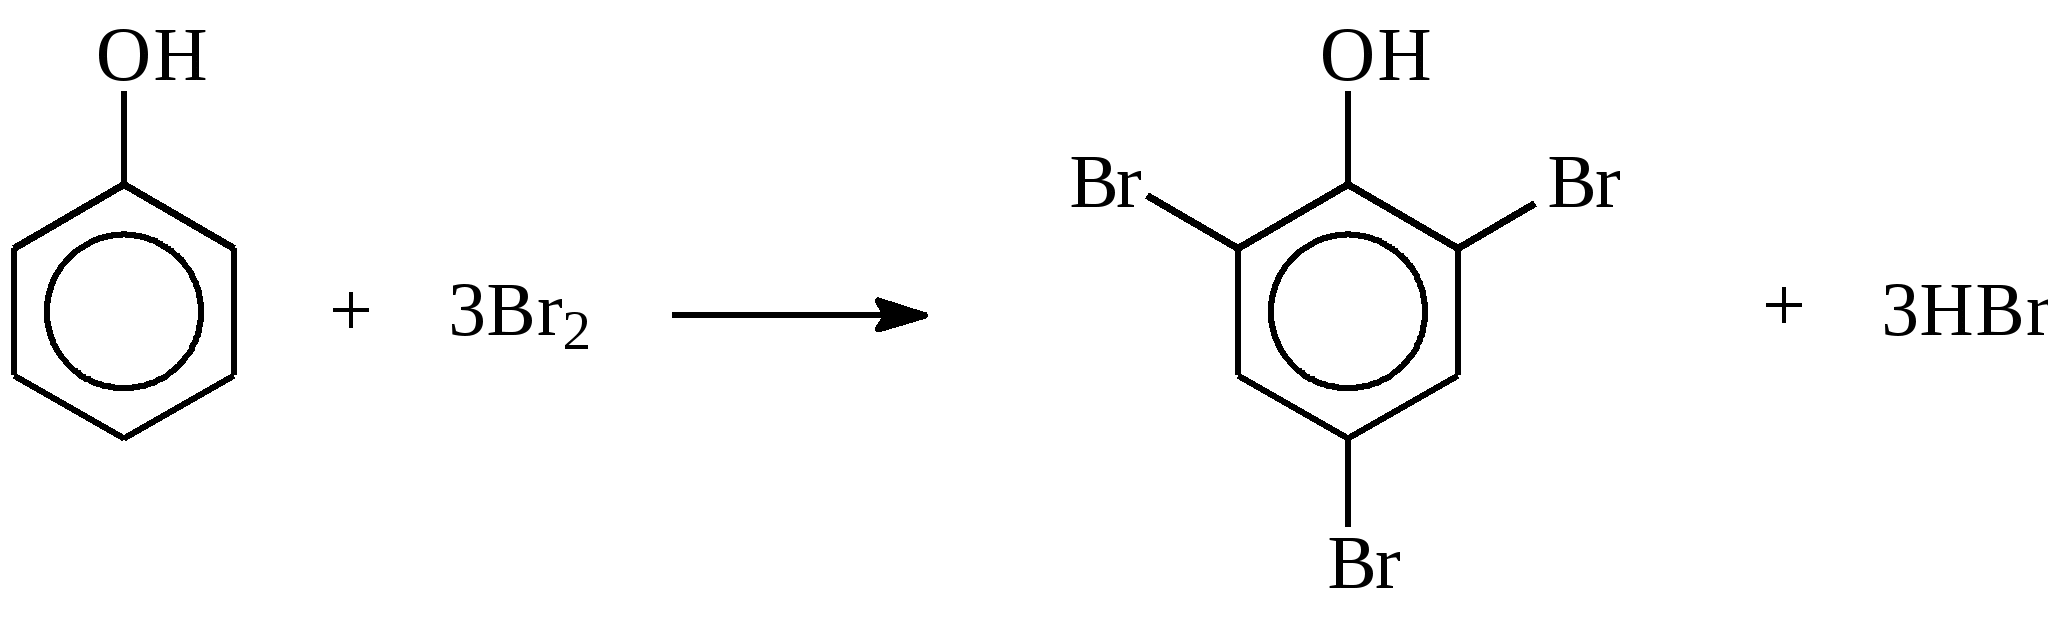 Фенол 2 4 6 трибромфенол реакция. Взаимодействие фенола с бромной водой. Анилин и бромная вода. Реакция взаимодействия фенола с бромной водой. Анилин и бромная вода реакция